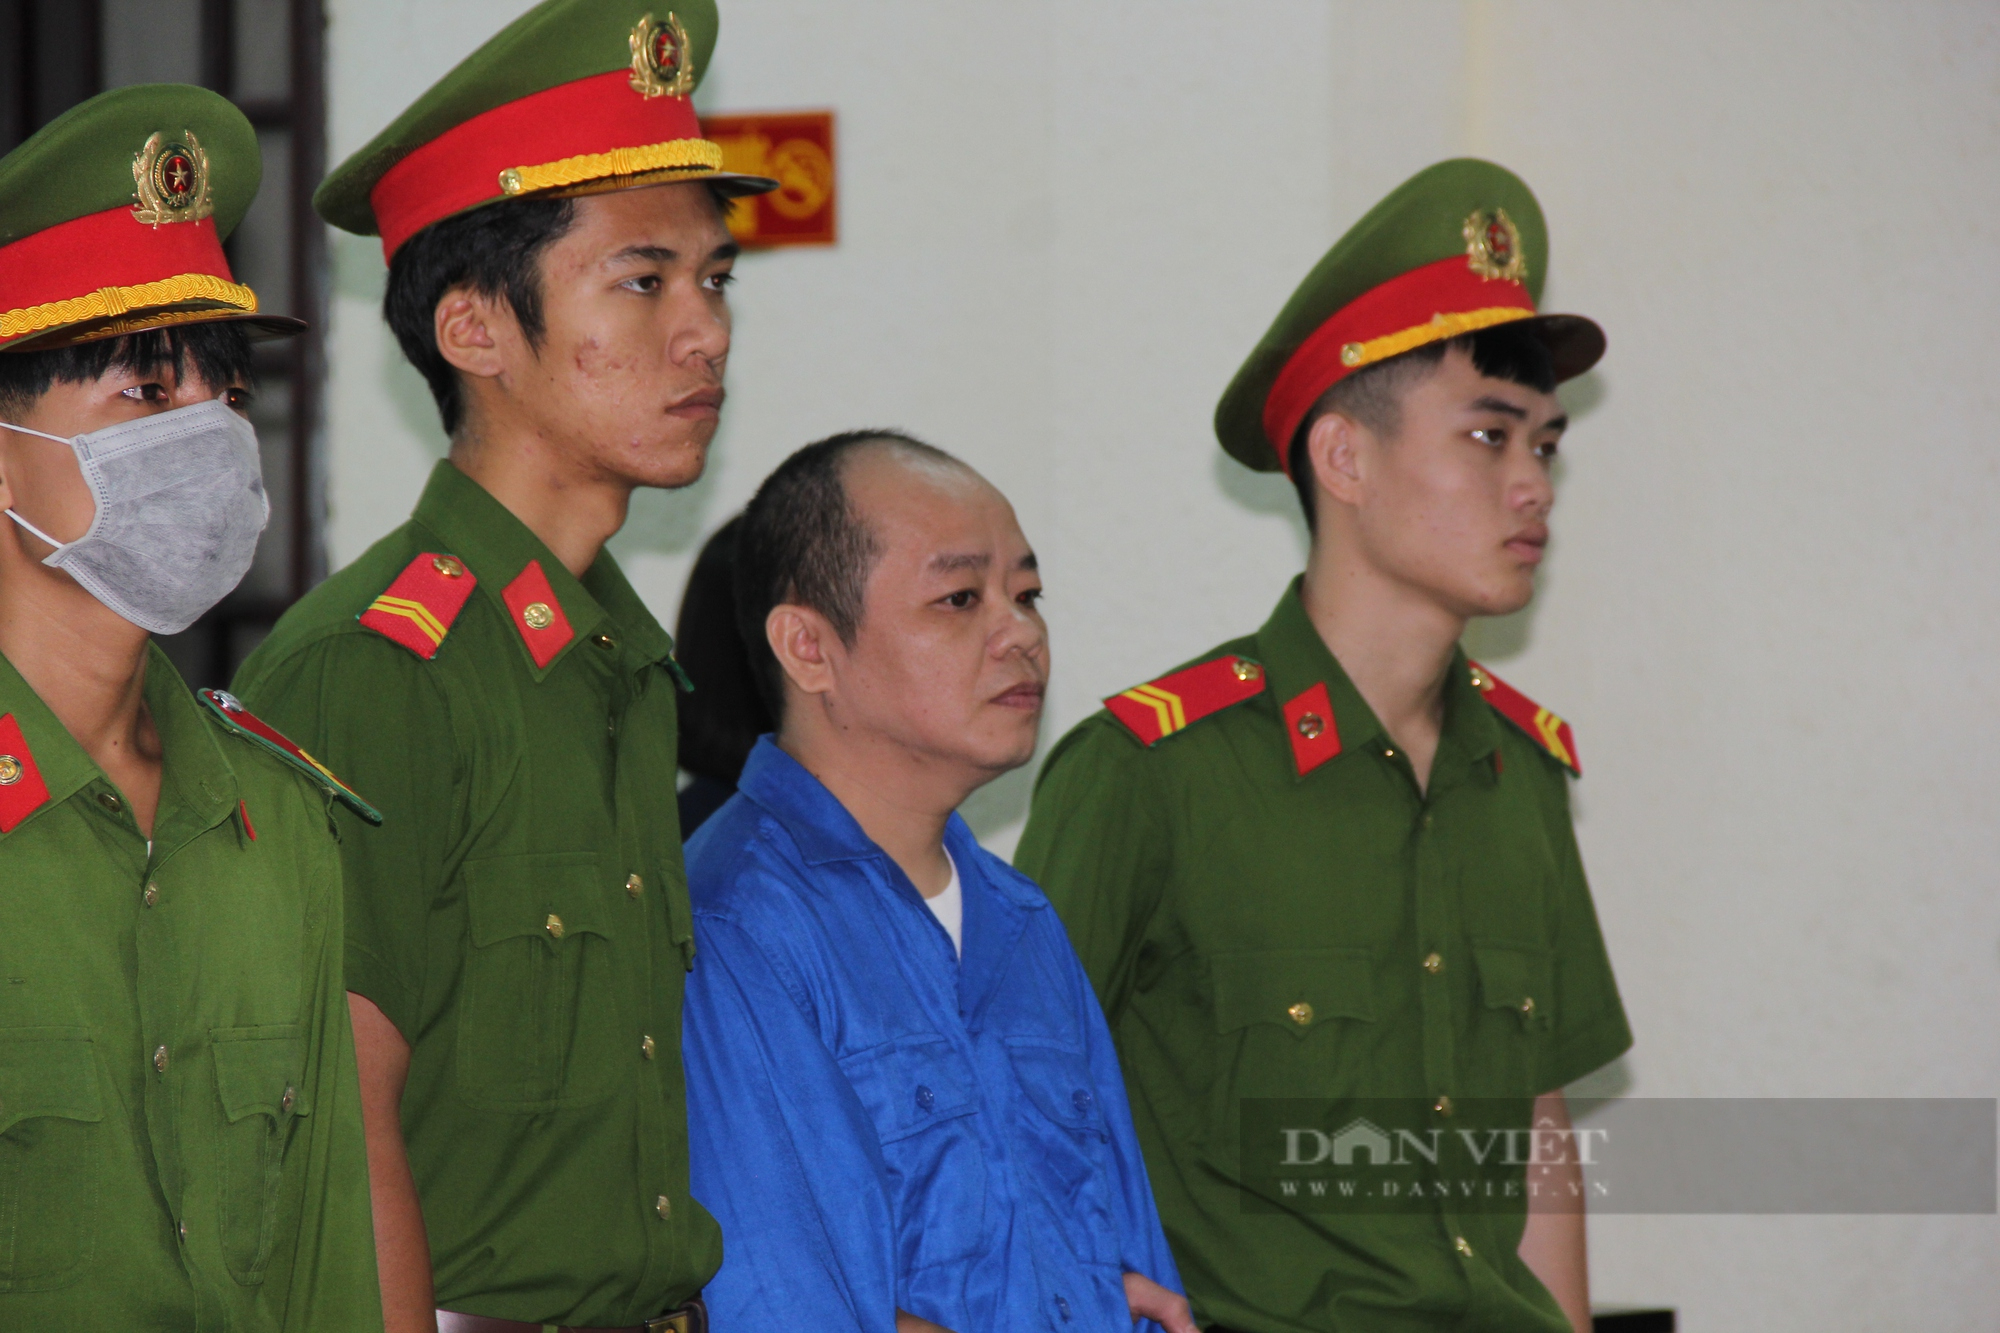 Cựu tu sĩ giết người, phi tang xác ở Quảng Trị khai chỉ “lỡ tay” - Ảnh 2.